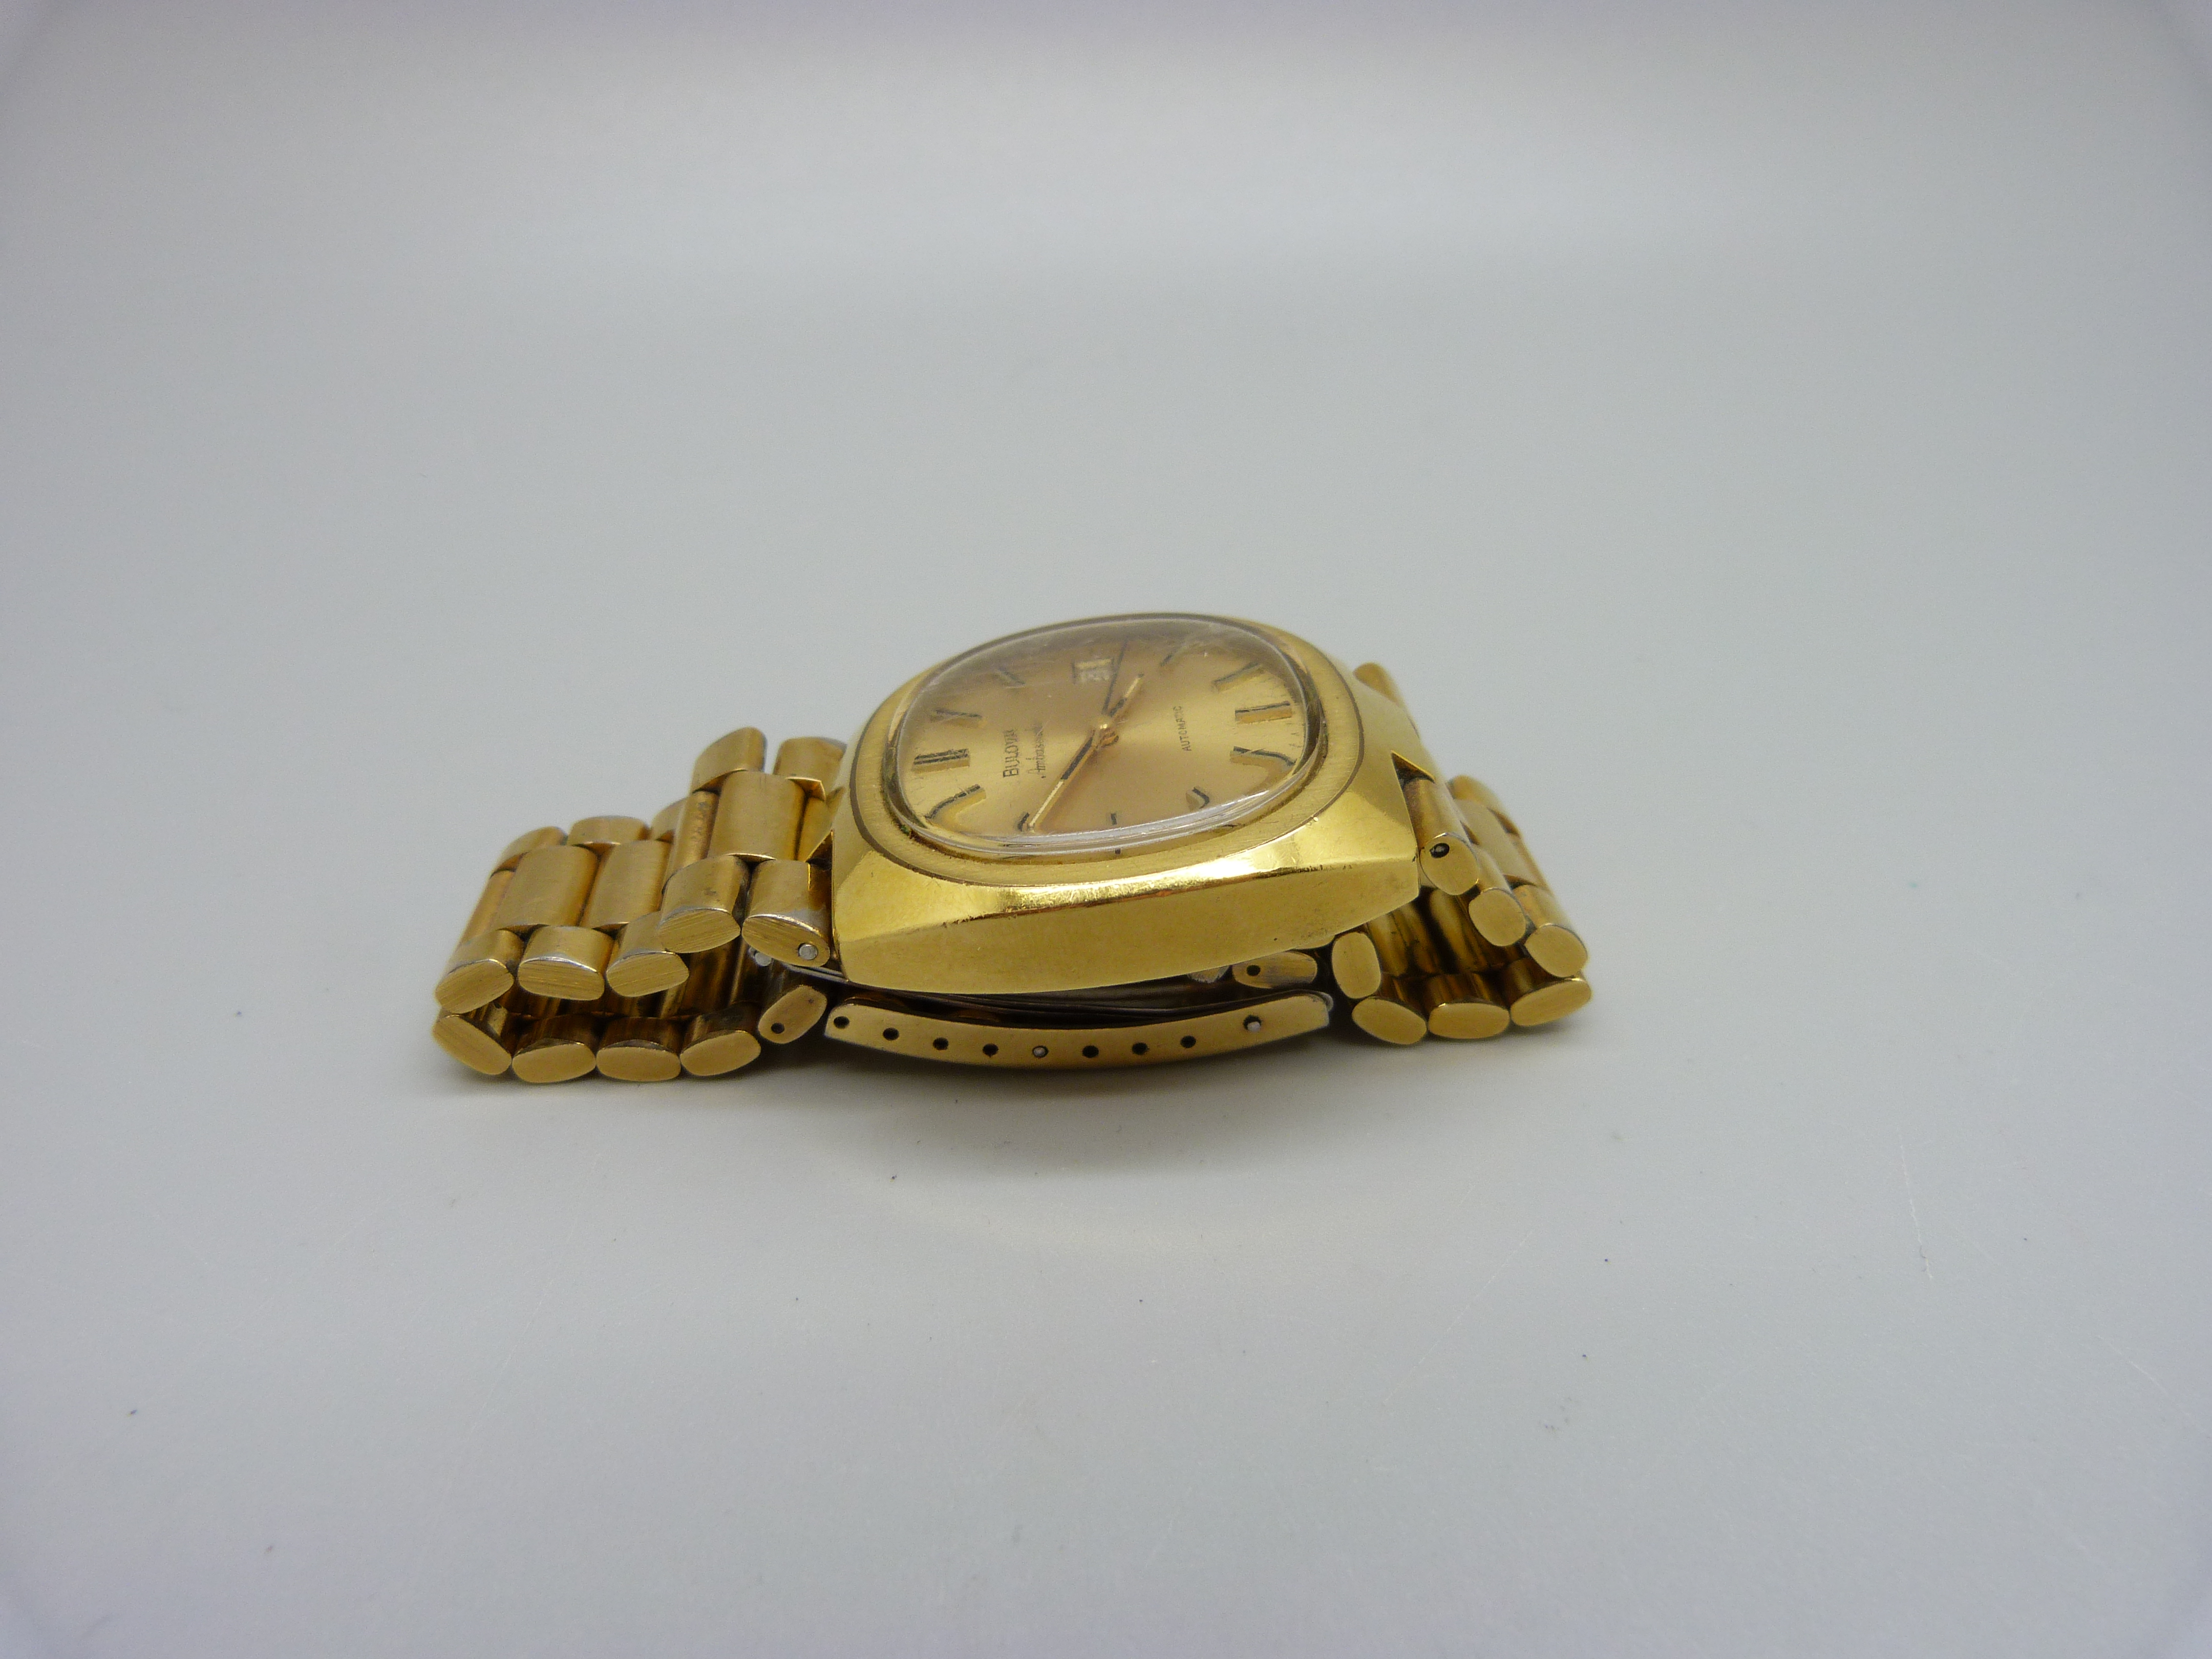 A Bulova Ambassador automatic wristwatch - Image 7 of 7